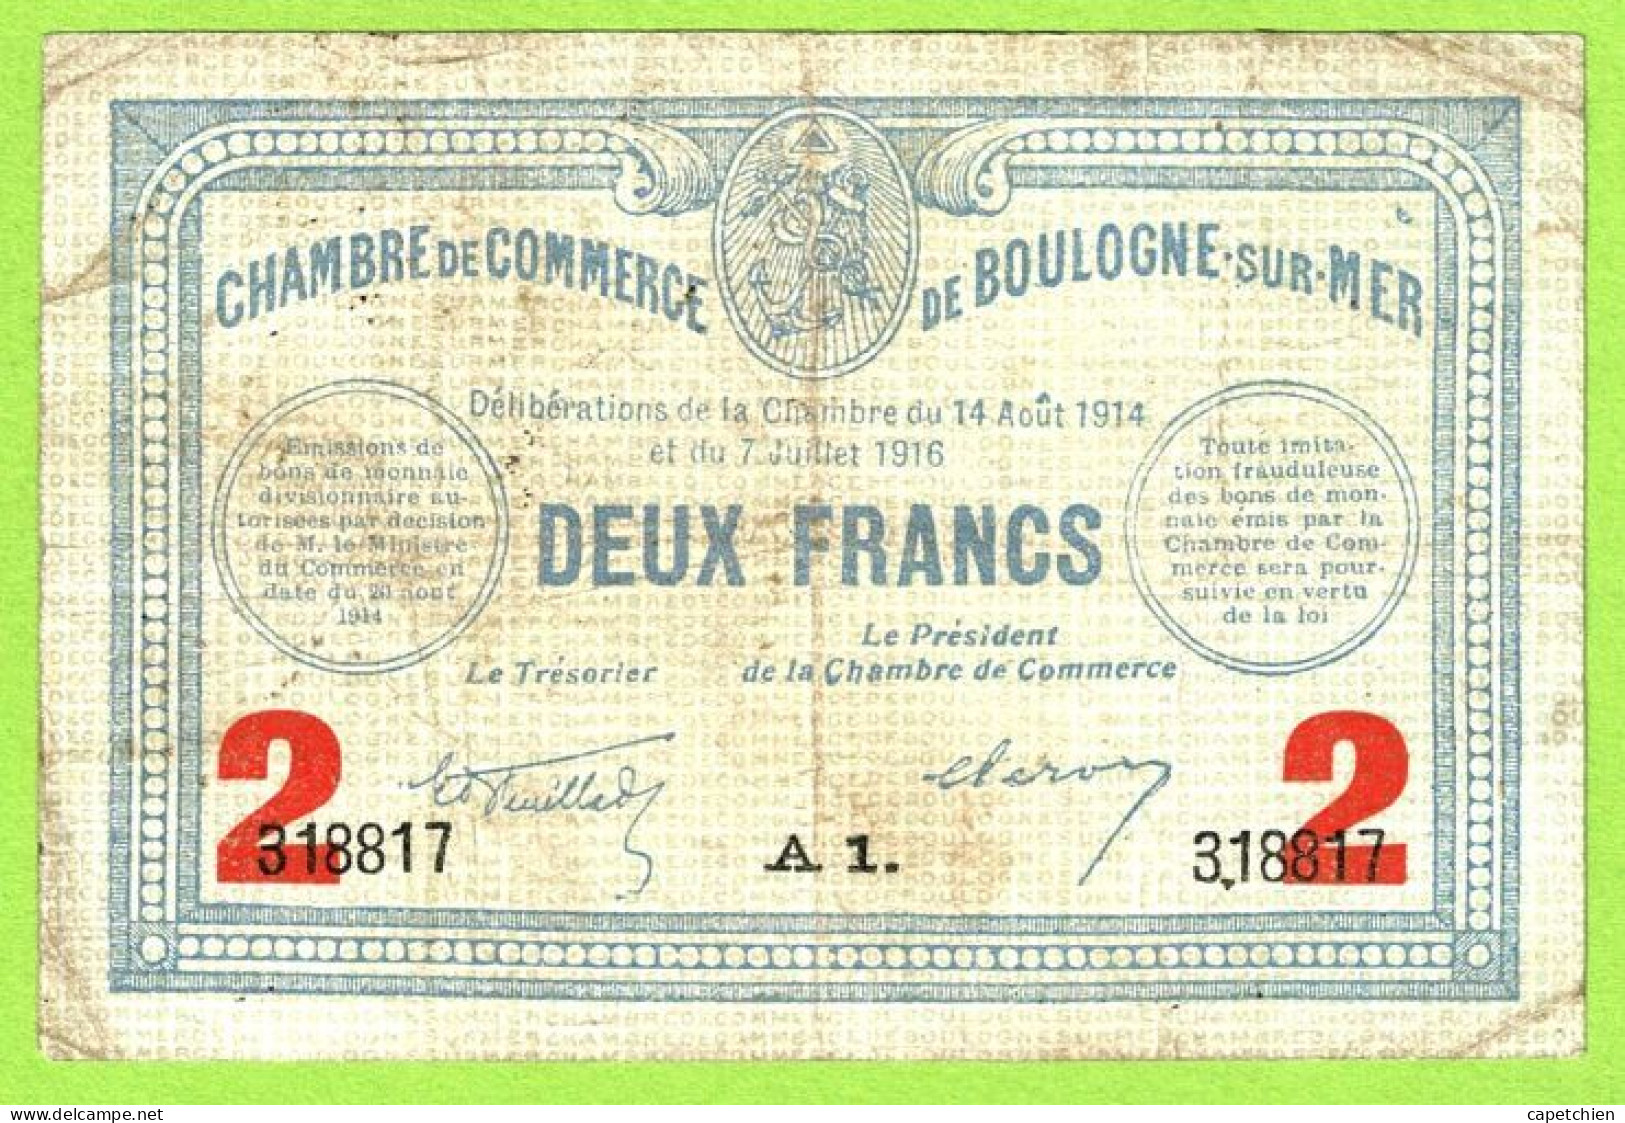 FRANCE / CHAMBRE De COMMERCE : BOULOGNE SUR MER / 2 FRANCS / 14 AOUT 1914 - 7 JUILLET 1916  / N° 318817 / SERIE A1 - Chamber Of Commerce